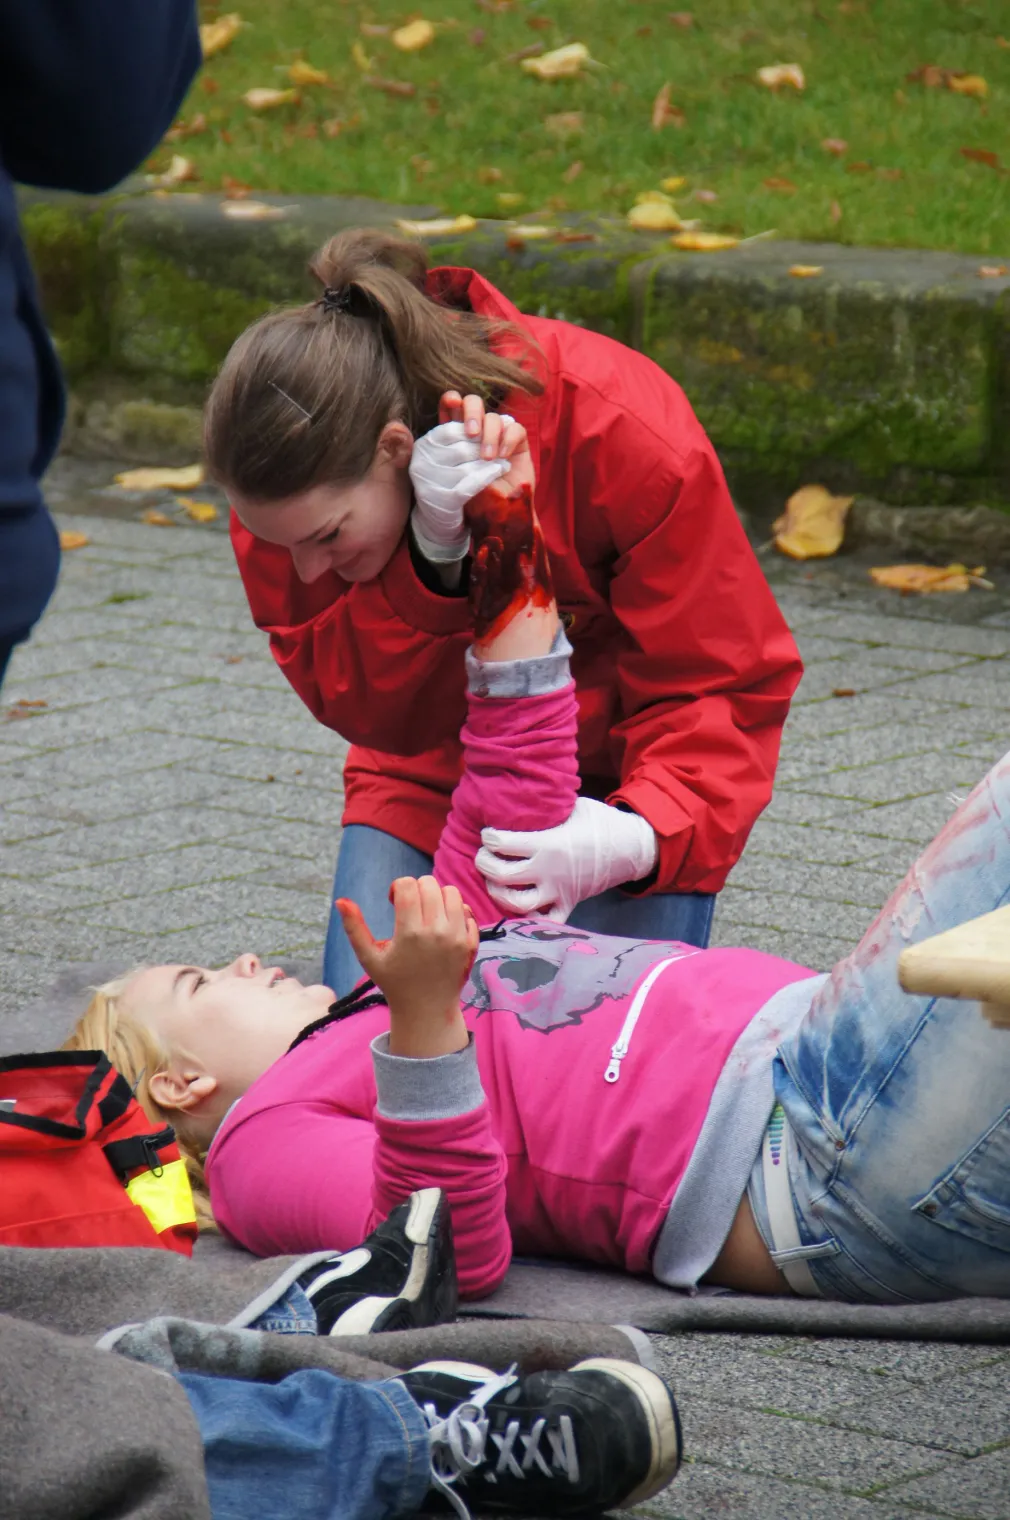 Ein JRK-Mitglied hilft einer verletzt und am Boden liegenden Person und versorgt diese